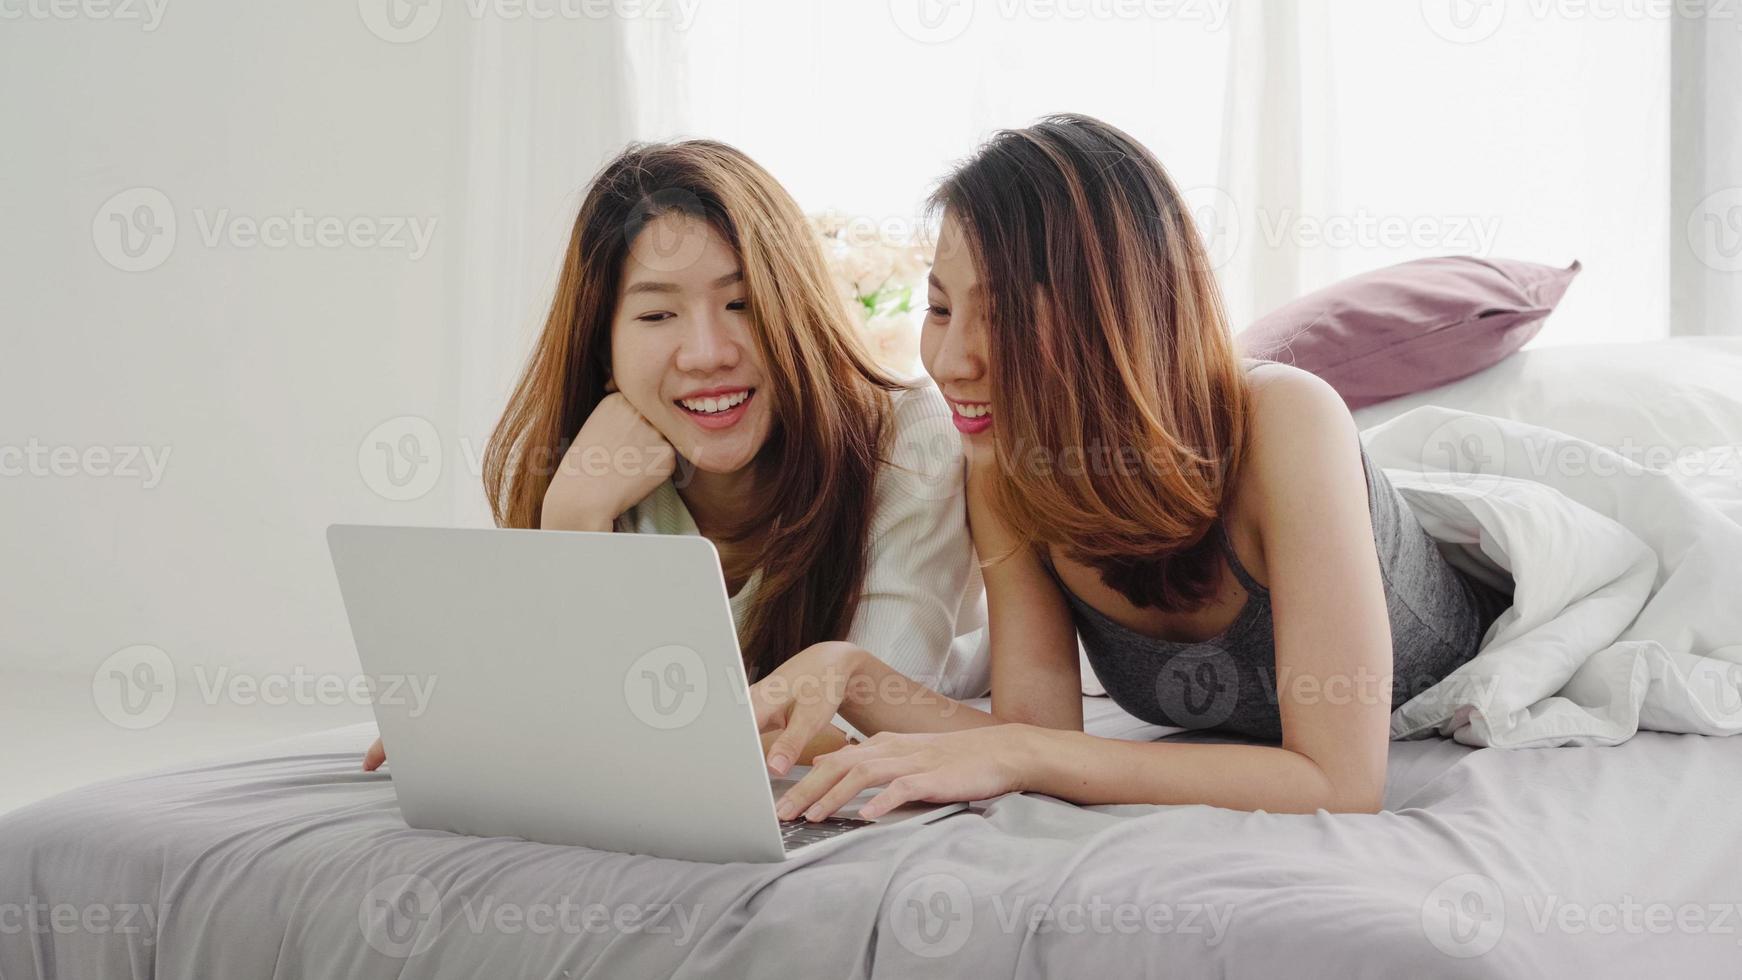 belle giovani donne asiatiche lgbt lesbica coppia felice seduta sul letto abbraccio e utilizzando il computer portatile insieme camera da letto a casa. lgbt coppia lesbica insieme al chiuso concetto. passare del tempo piacevole a casa. foto